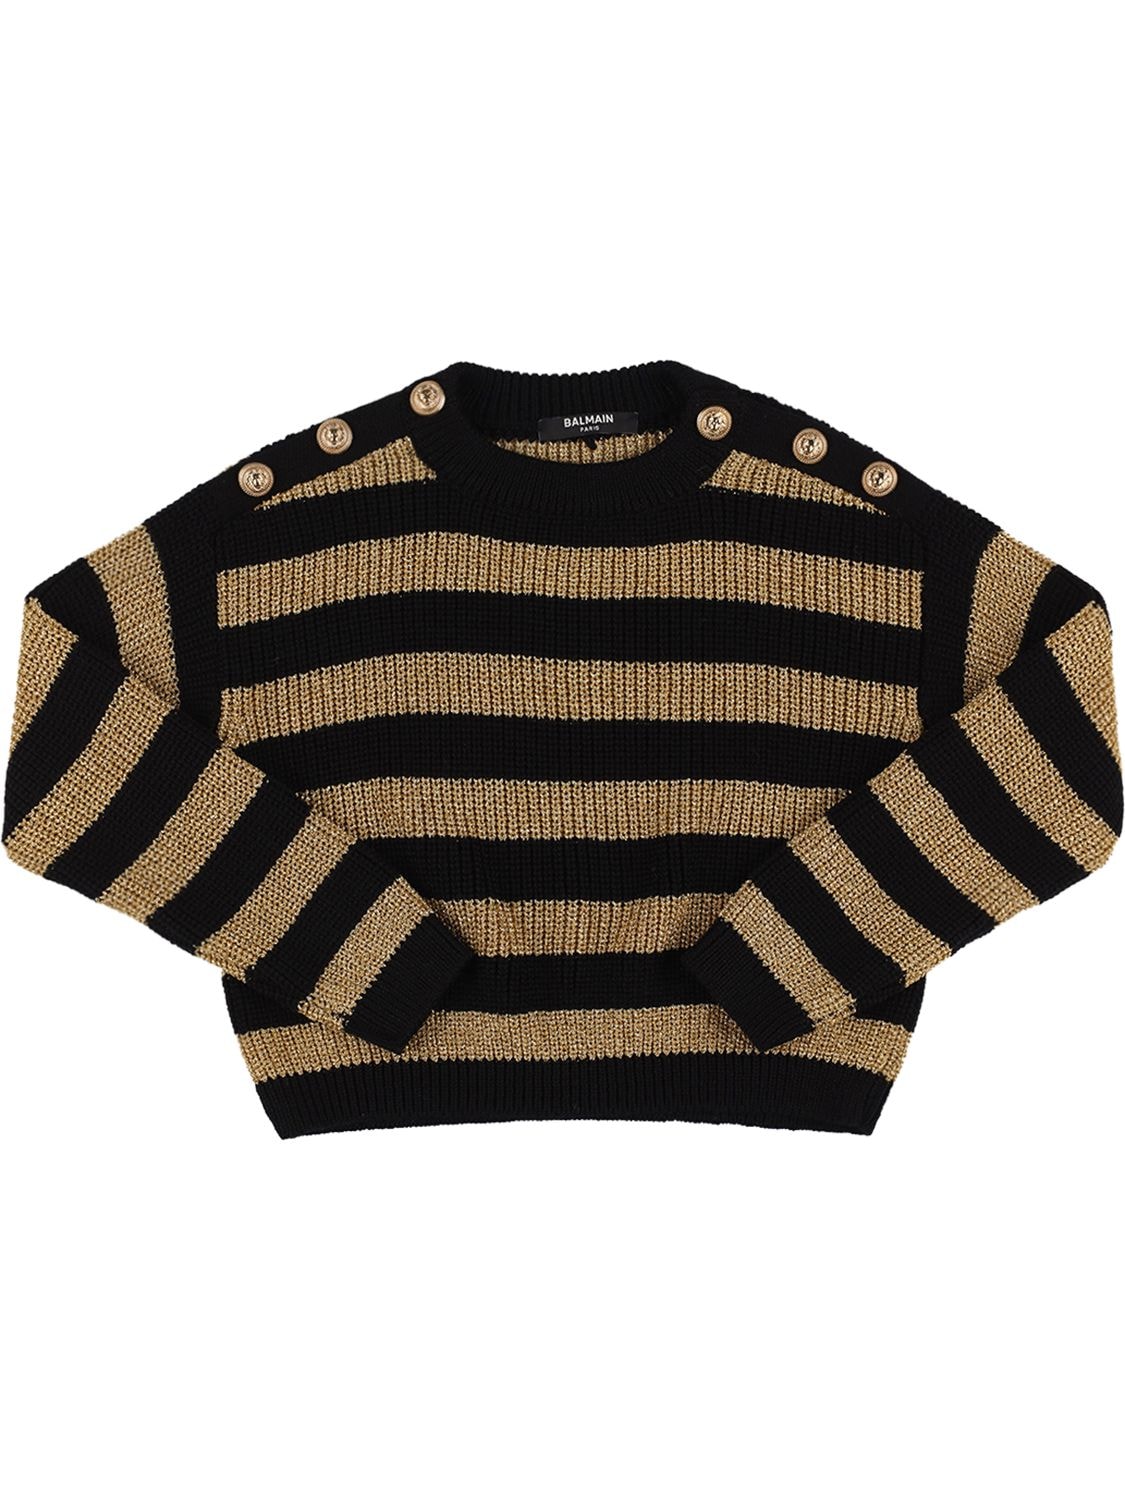 Balmain Kids' Striped Wool Knit Sweater In Black,gold